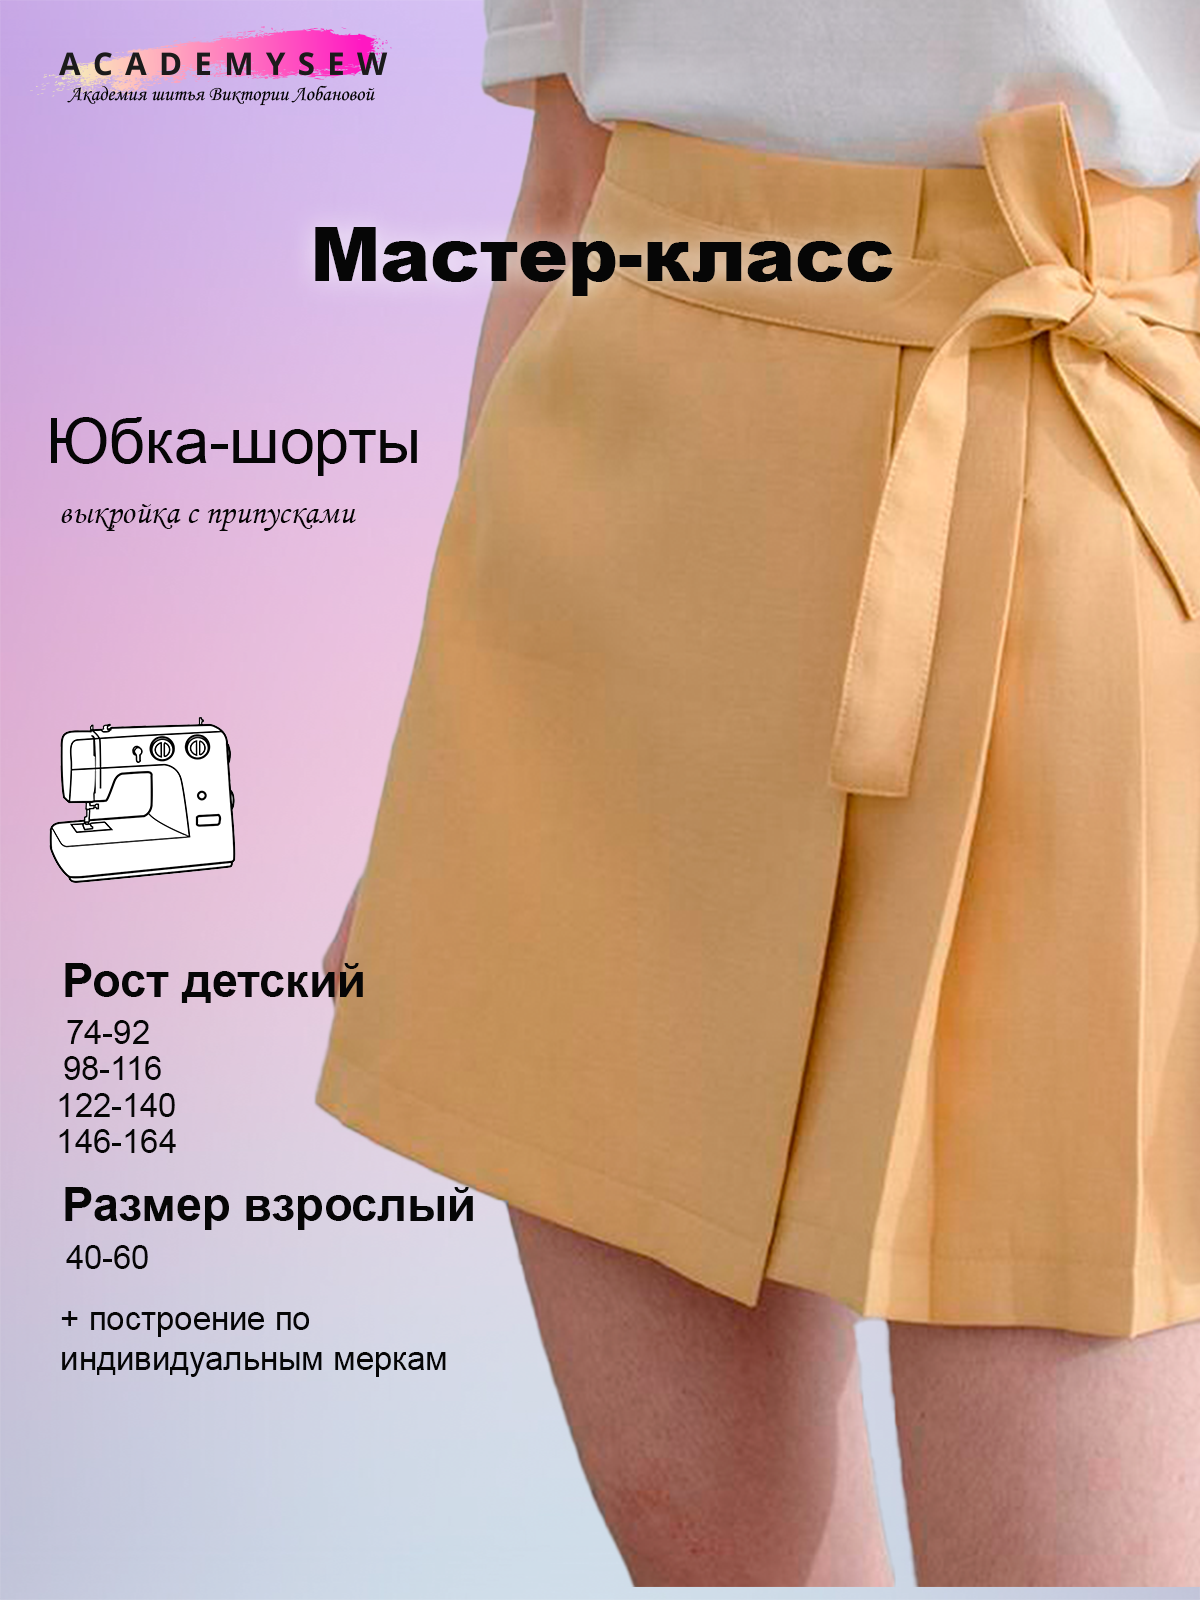 Как сшить юбку-шорты: пошаговая инструкция